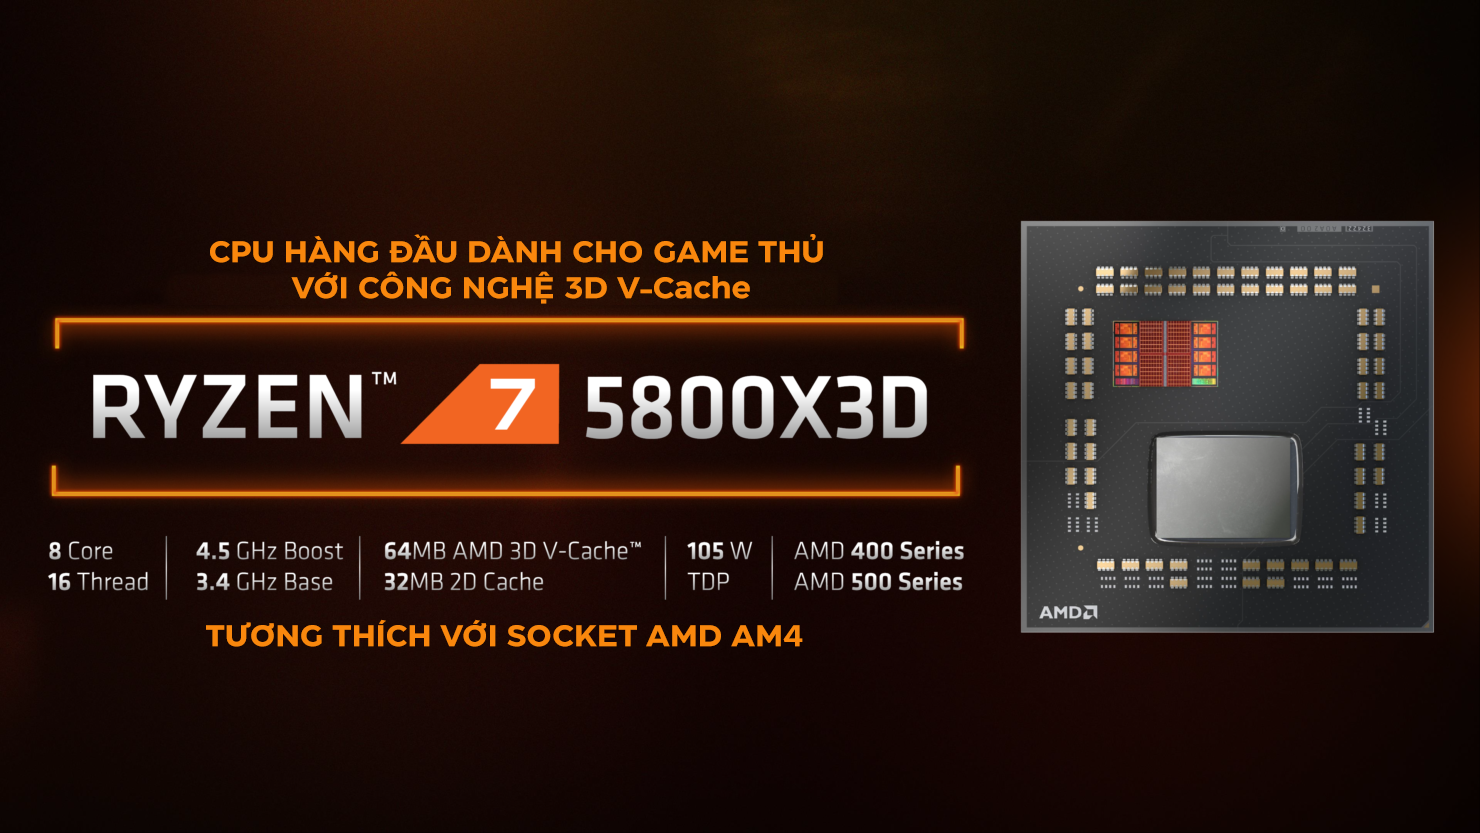 CPU AMD Ryzen 7 5800X3D (3.8 GHz Upto 4.7GHz / 36MB / 8 Cores, 16 Threads / 105W / Socket AM4